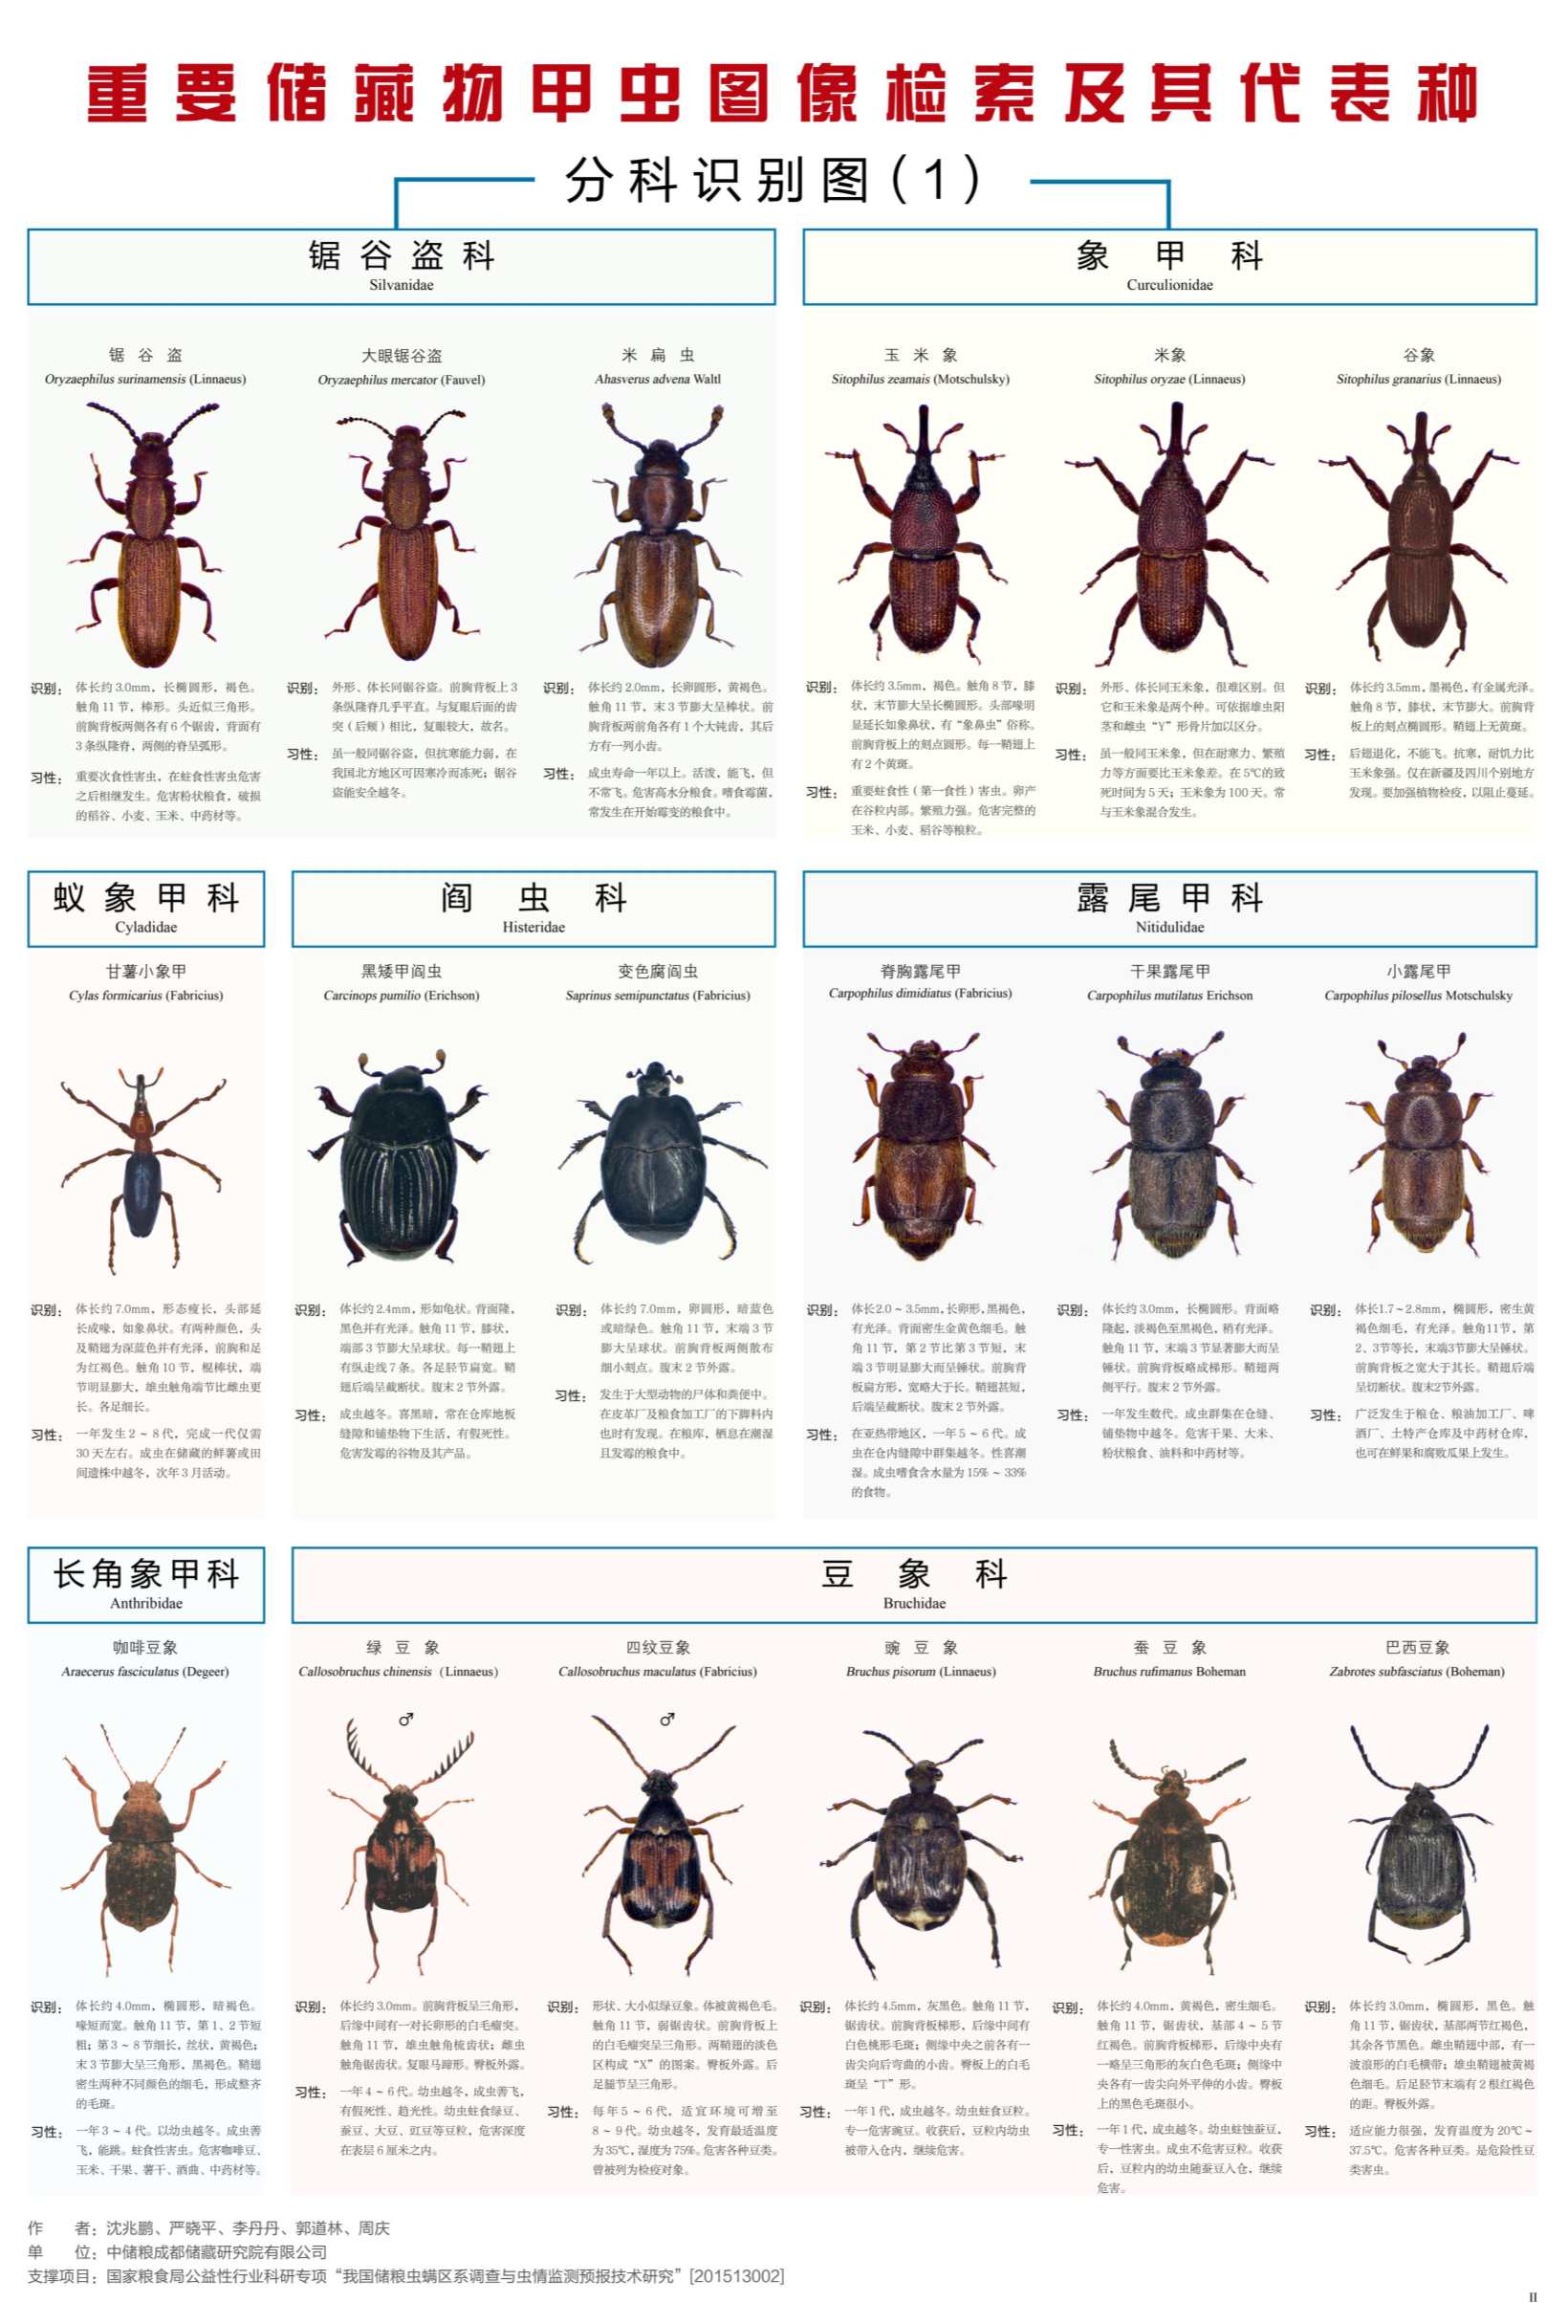 图文 《重要储藏物甲虫图像检索及其代表种》图谱_2_副本.jpg